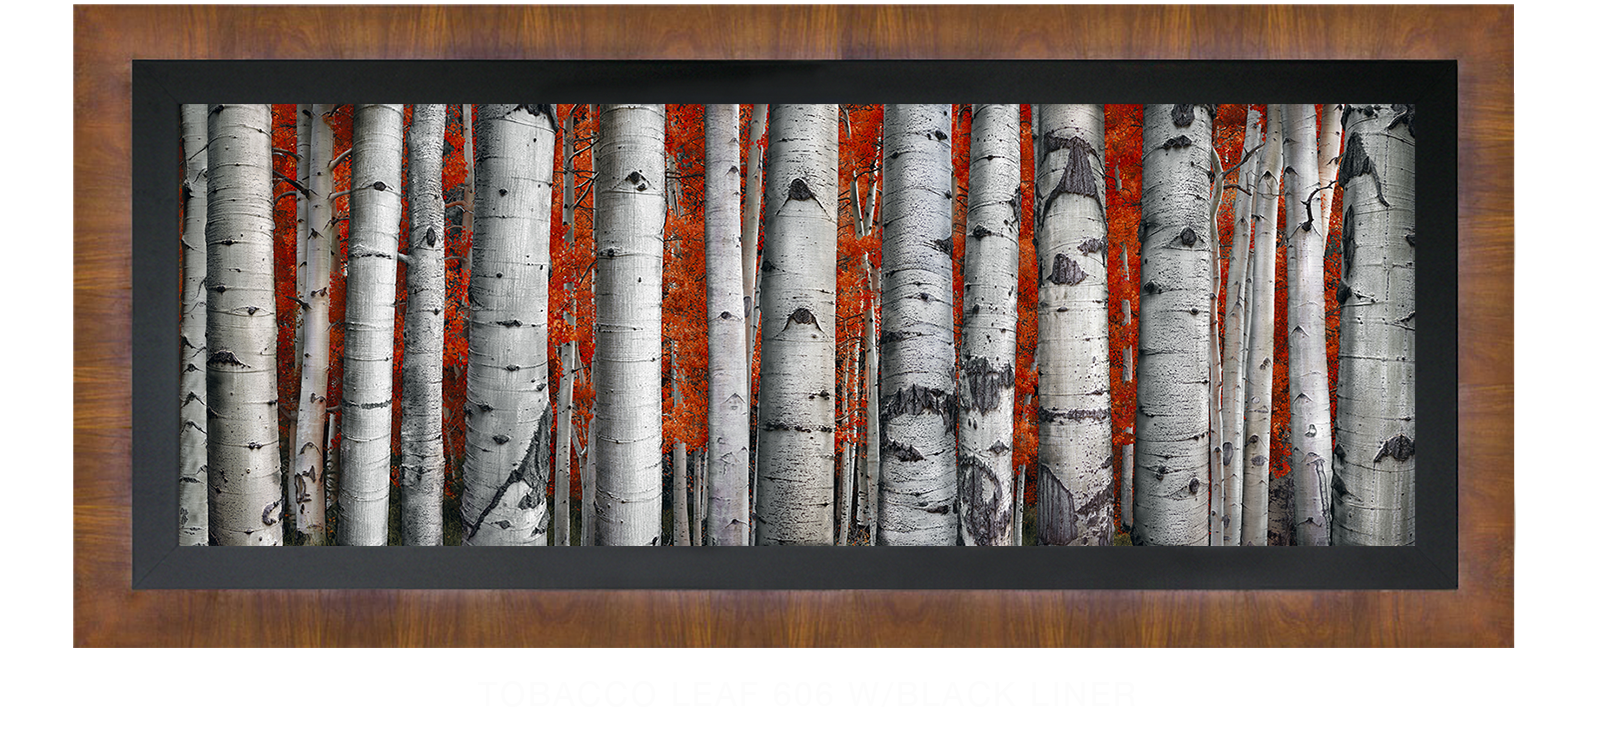 23ASPEN Tobacco Leaf 606 w_Blk Liner T